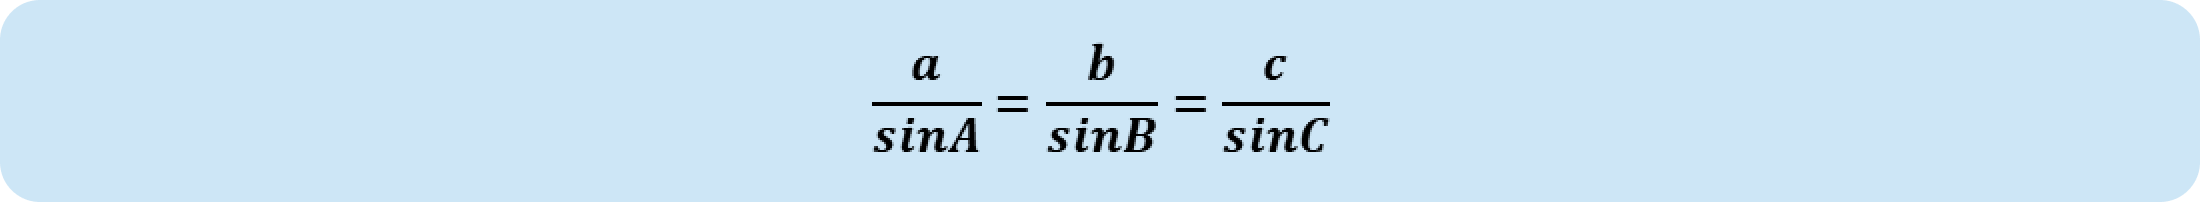 Figure 3-2 The sin principle